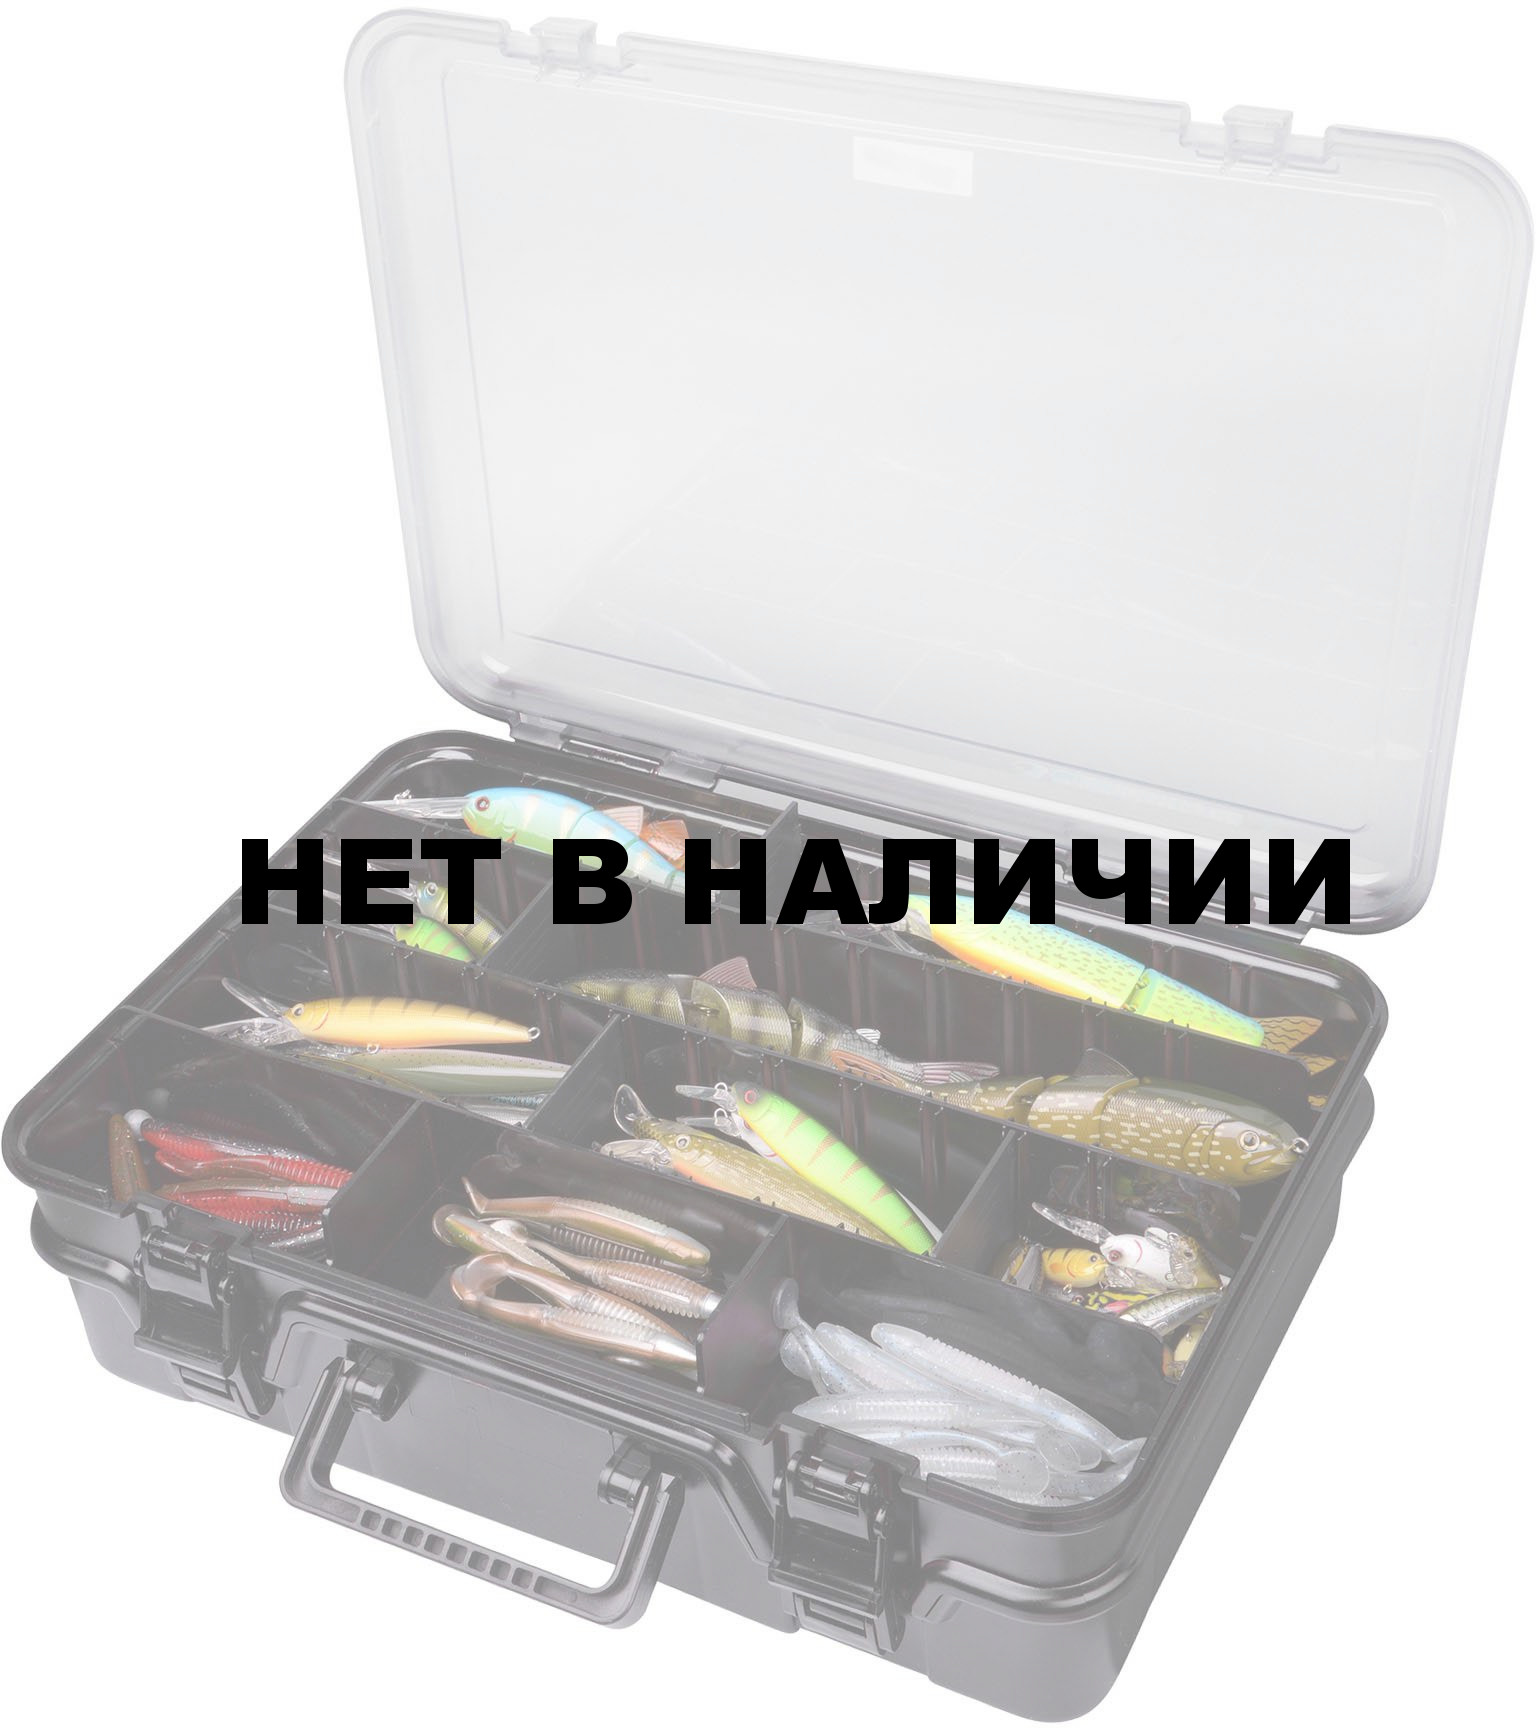 Коробка рыболовная SPRO TACKLE BOX DX 380x270x122mm, производитель SPRO  Купить - Интернет-магазин форменной одежды